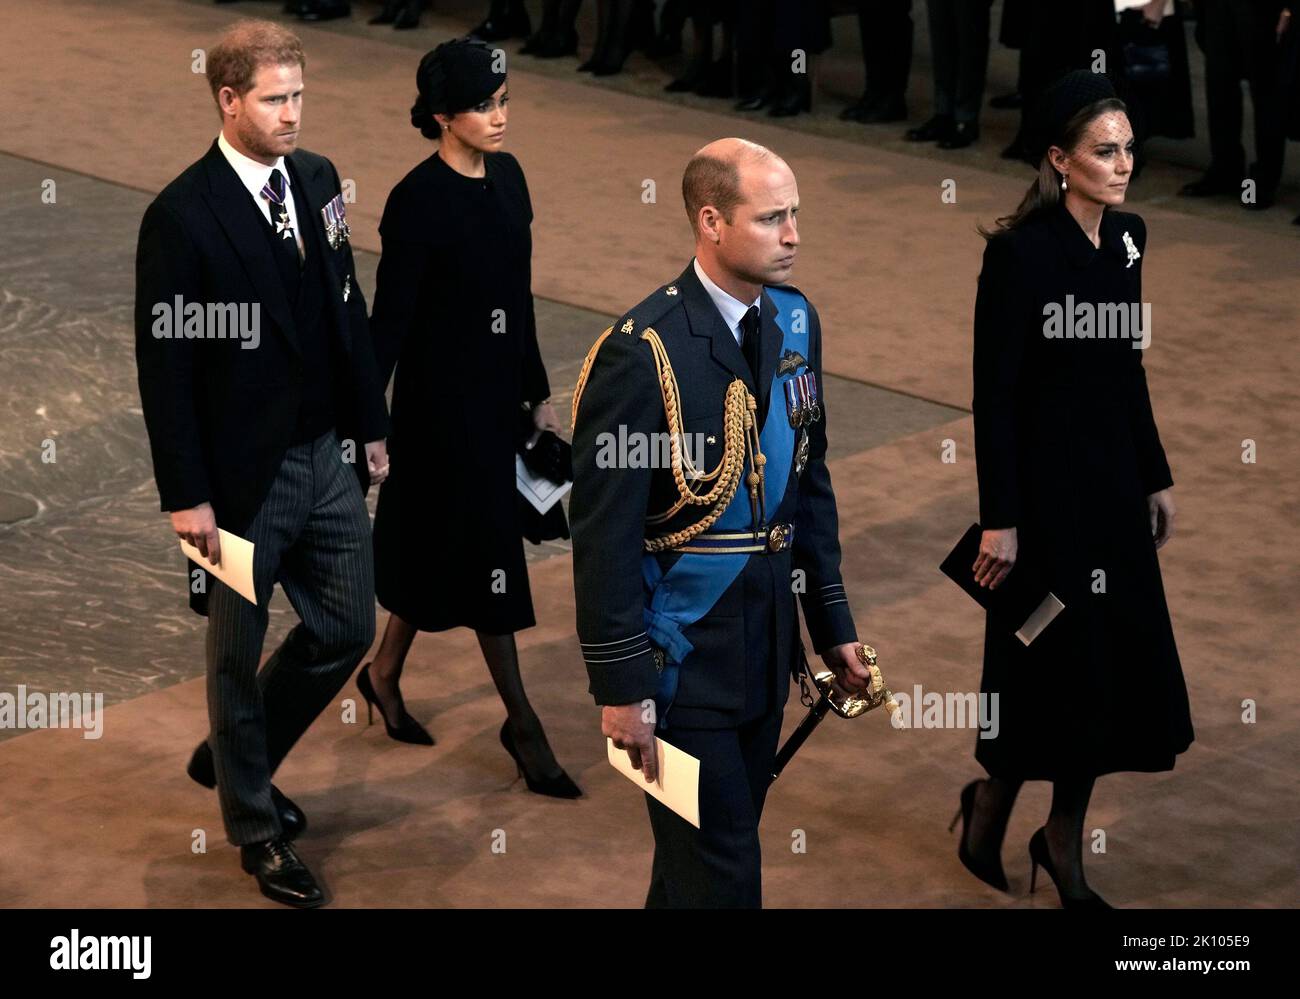 Der Herzog und die Herzogin von Sussex und der Prinz und die Prinzessin von Wales bei einem Gottesdienst in der Westminster Hall, London, wo der Sarg von Königin Elizabeth II. Vor ihrer Beerdigung am Montag in einem Zustand liegen wird. Bilddatum: Mittwoch, 14. September 2022. Stockfoto